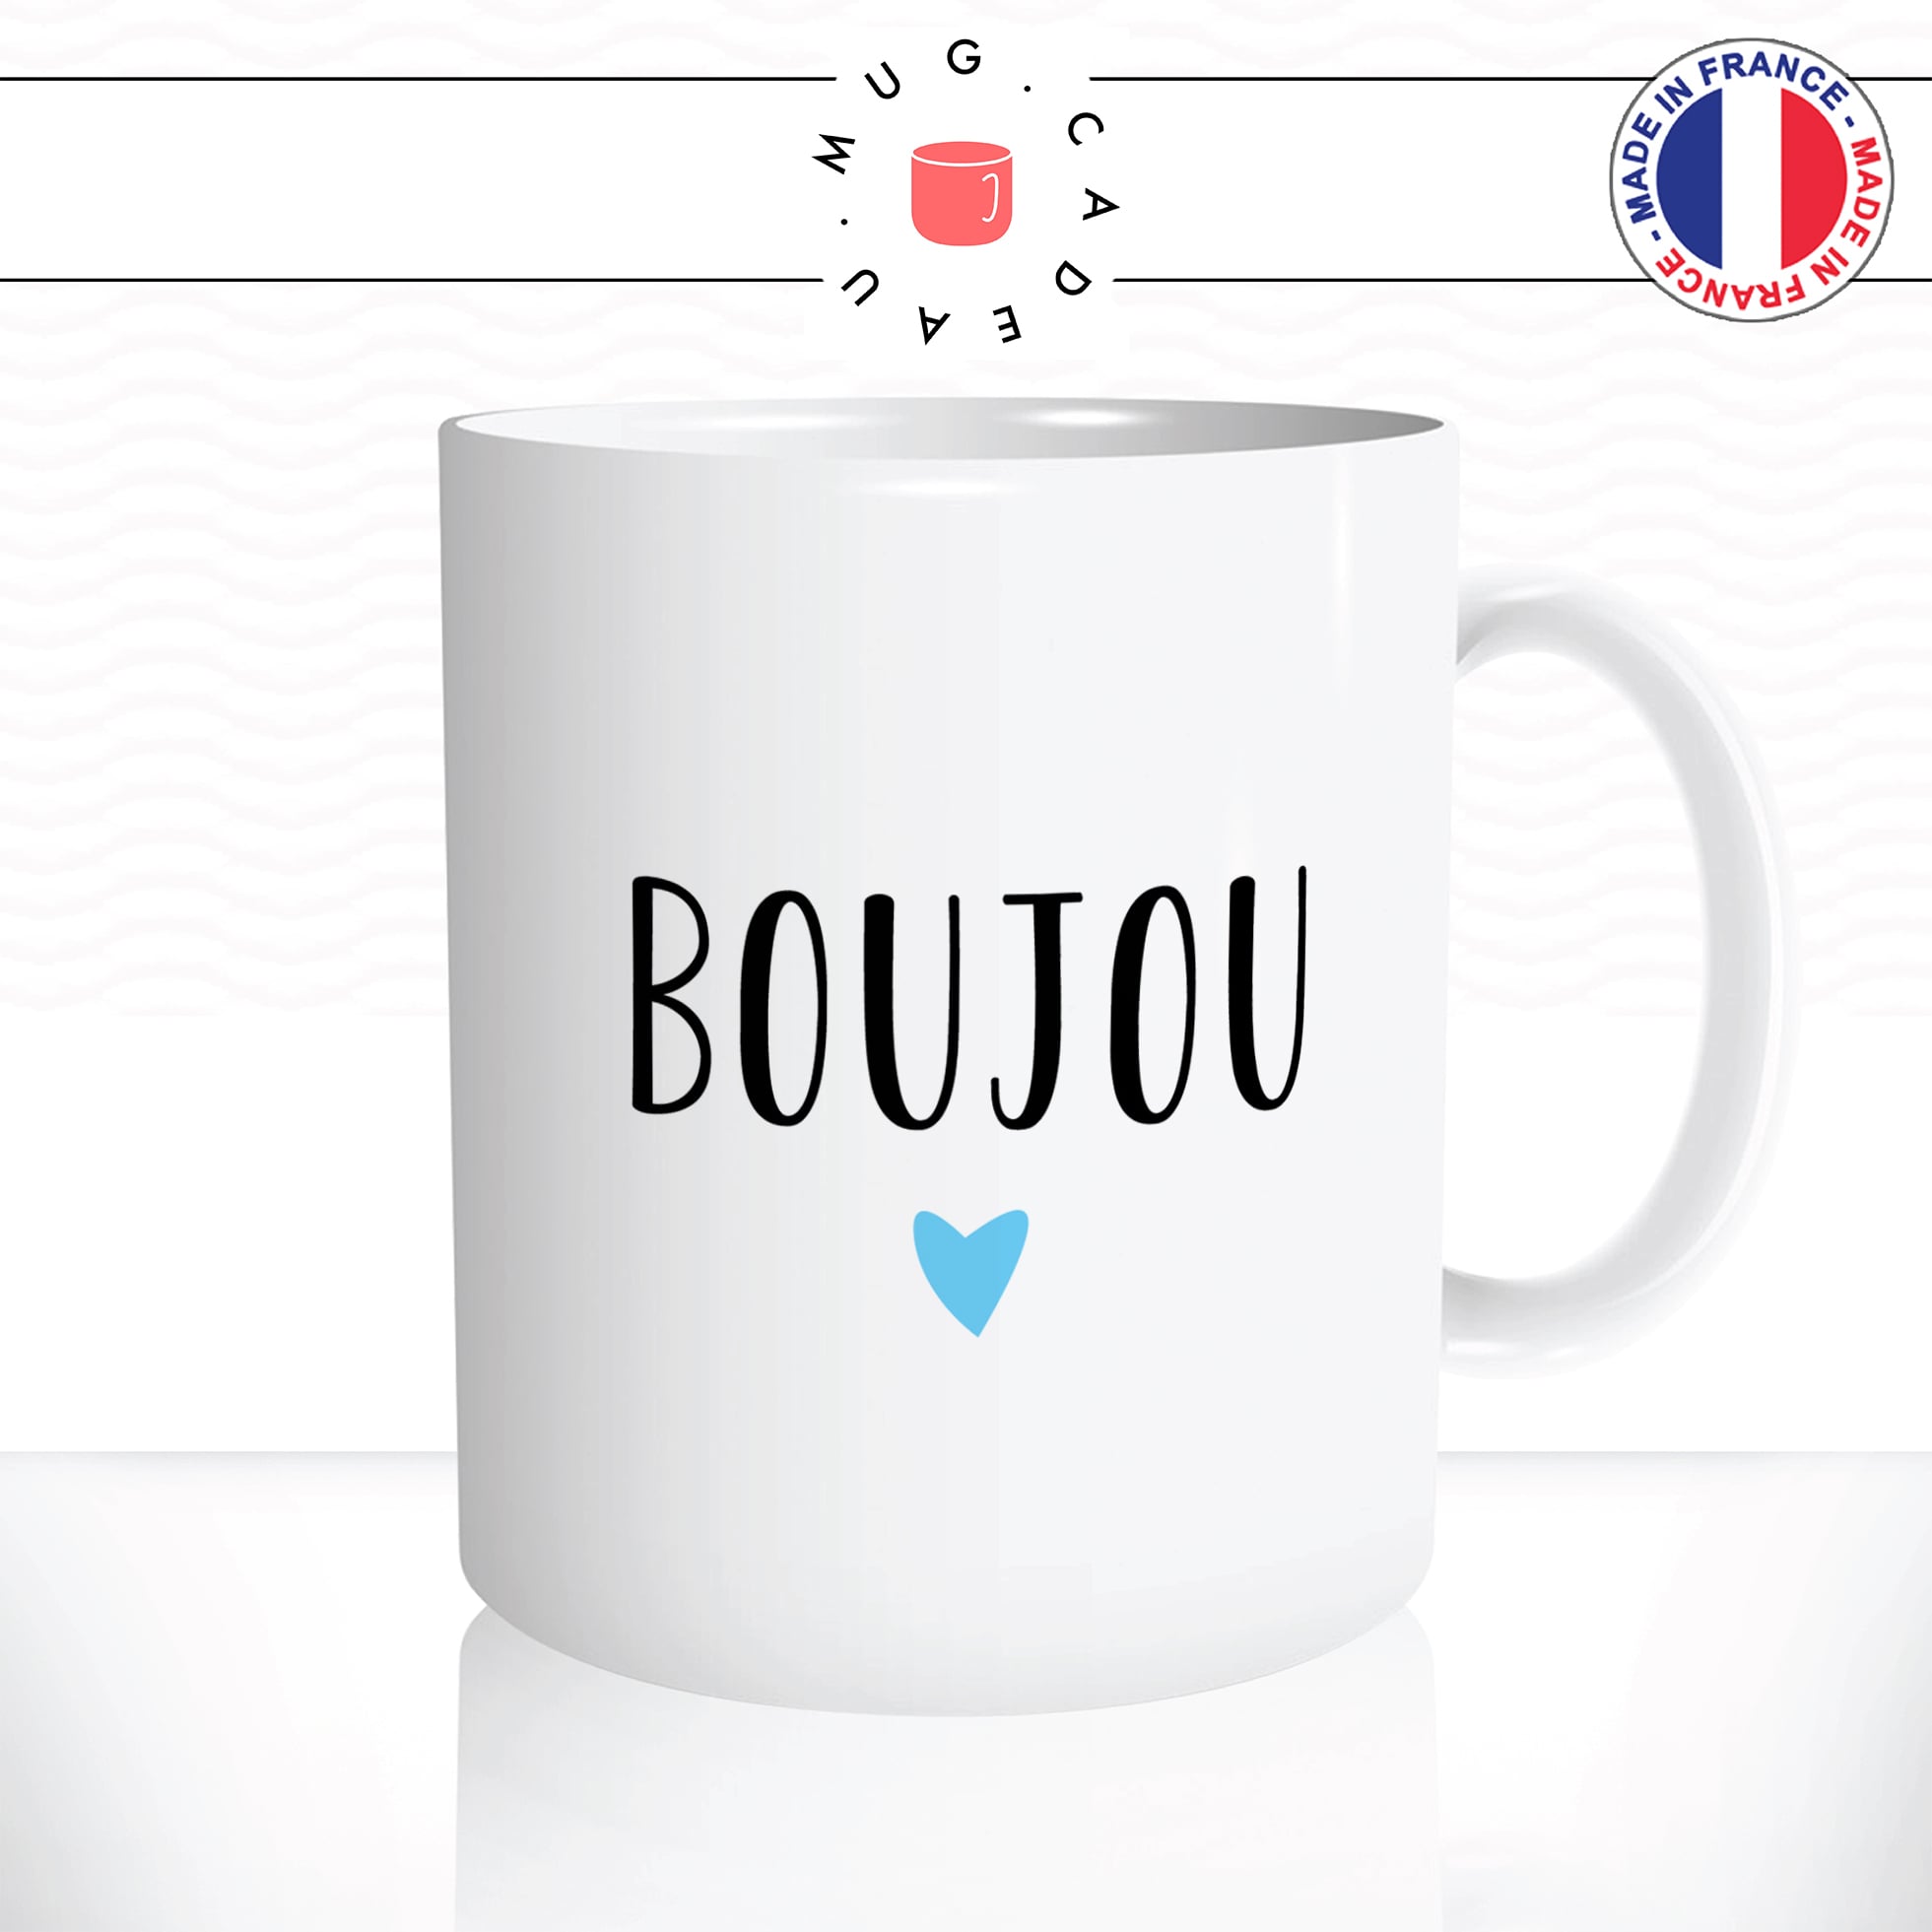 mug-tasse-booujou-normand-normandie-bisou-bonjour-patois-mignon-fun-café-thé-idée-cadeau-originale-personnalisée2-min